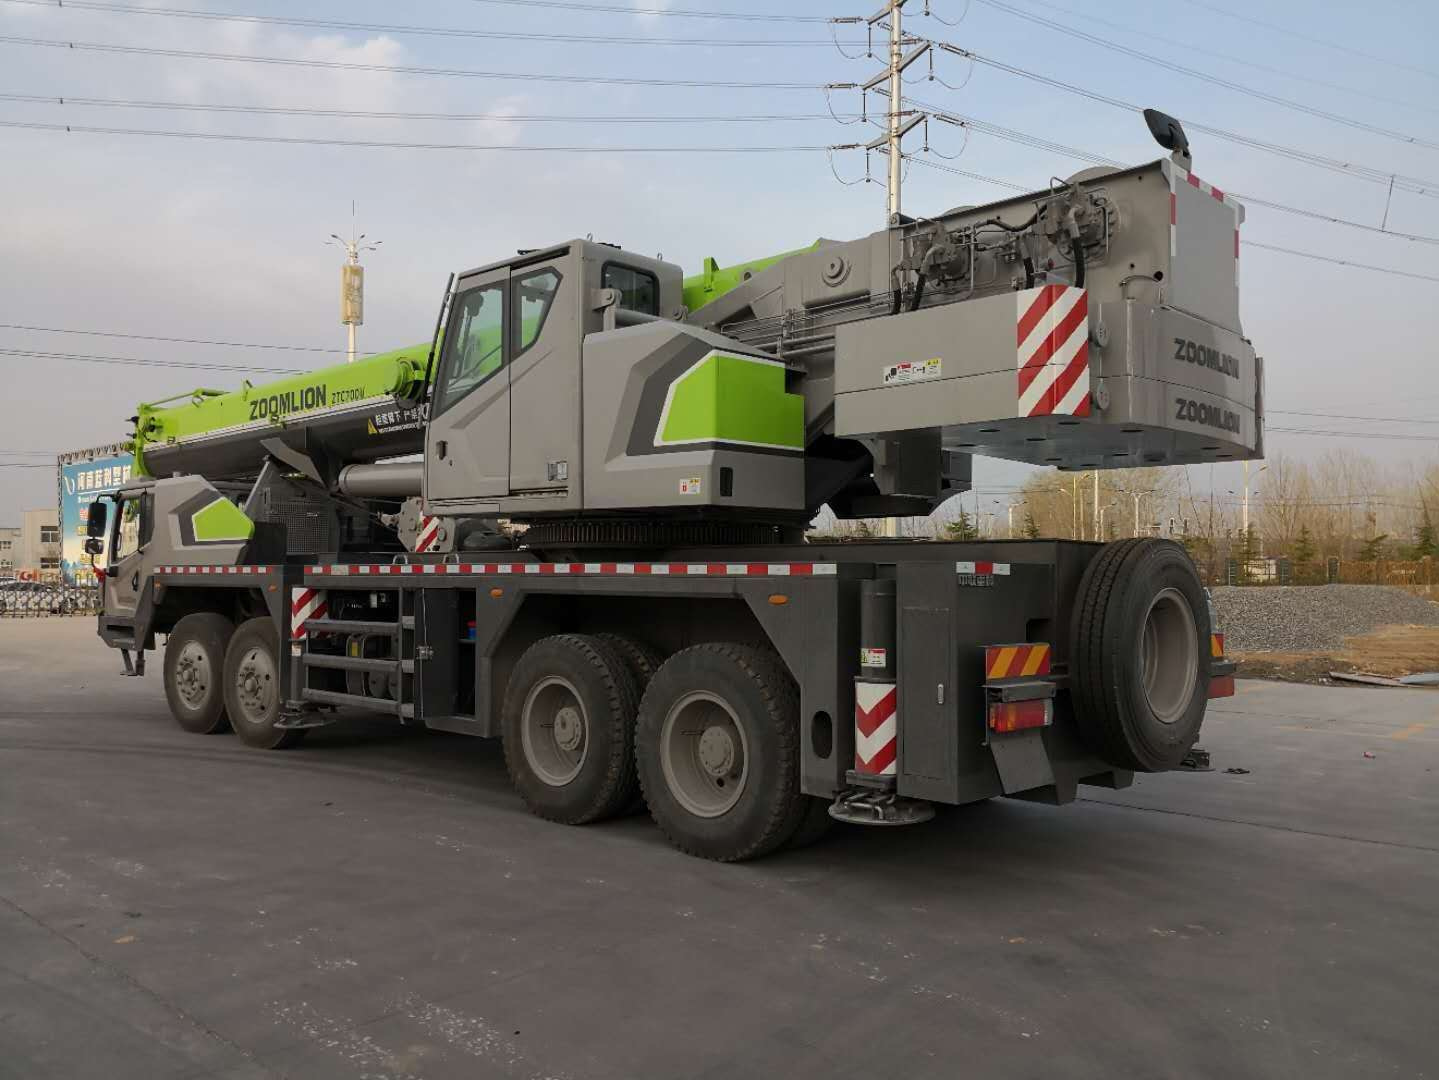 
                Zoomlion New mittlere Größe 70 Tonnen LKW Kran Ztc700h553 für Verkauf
            